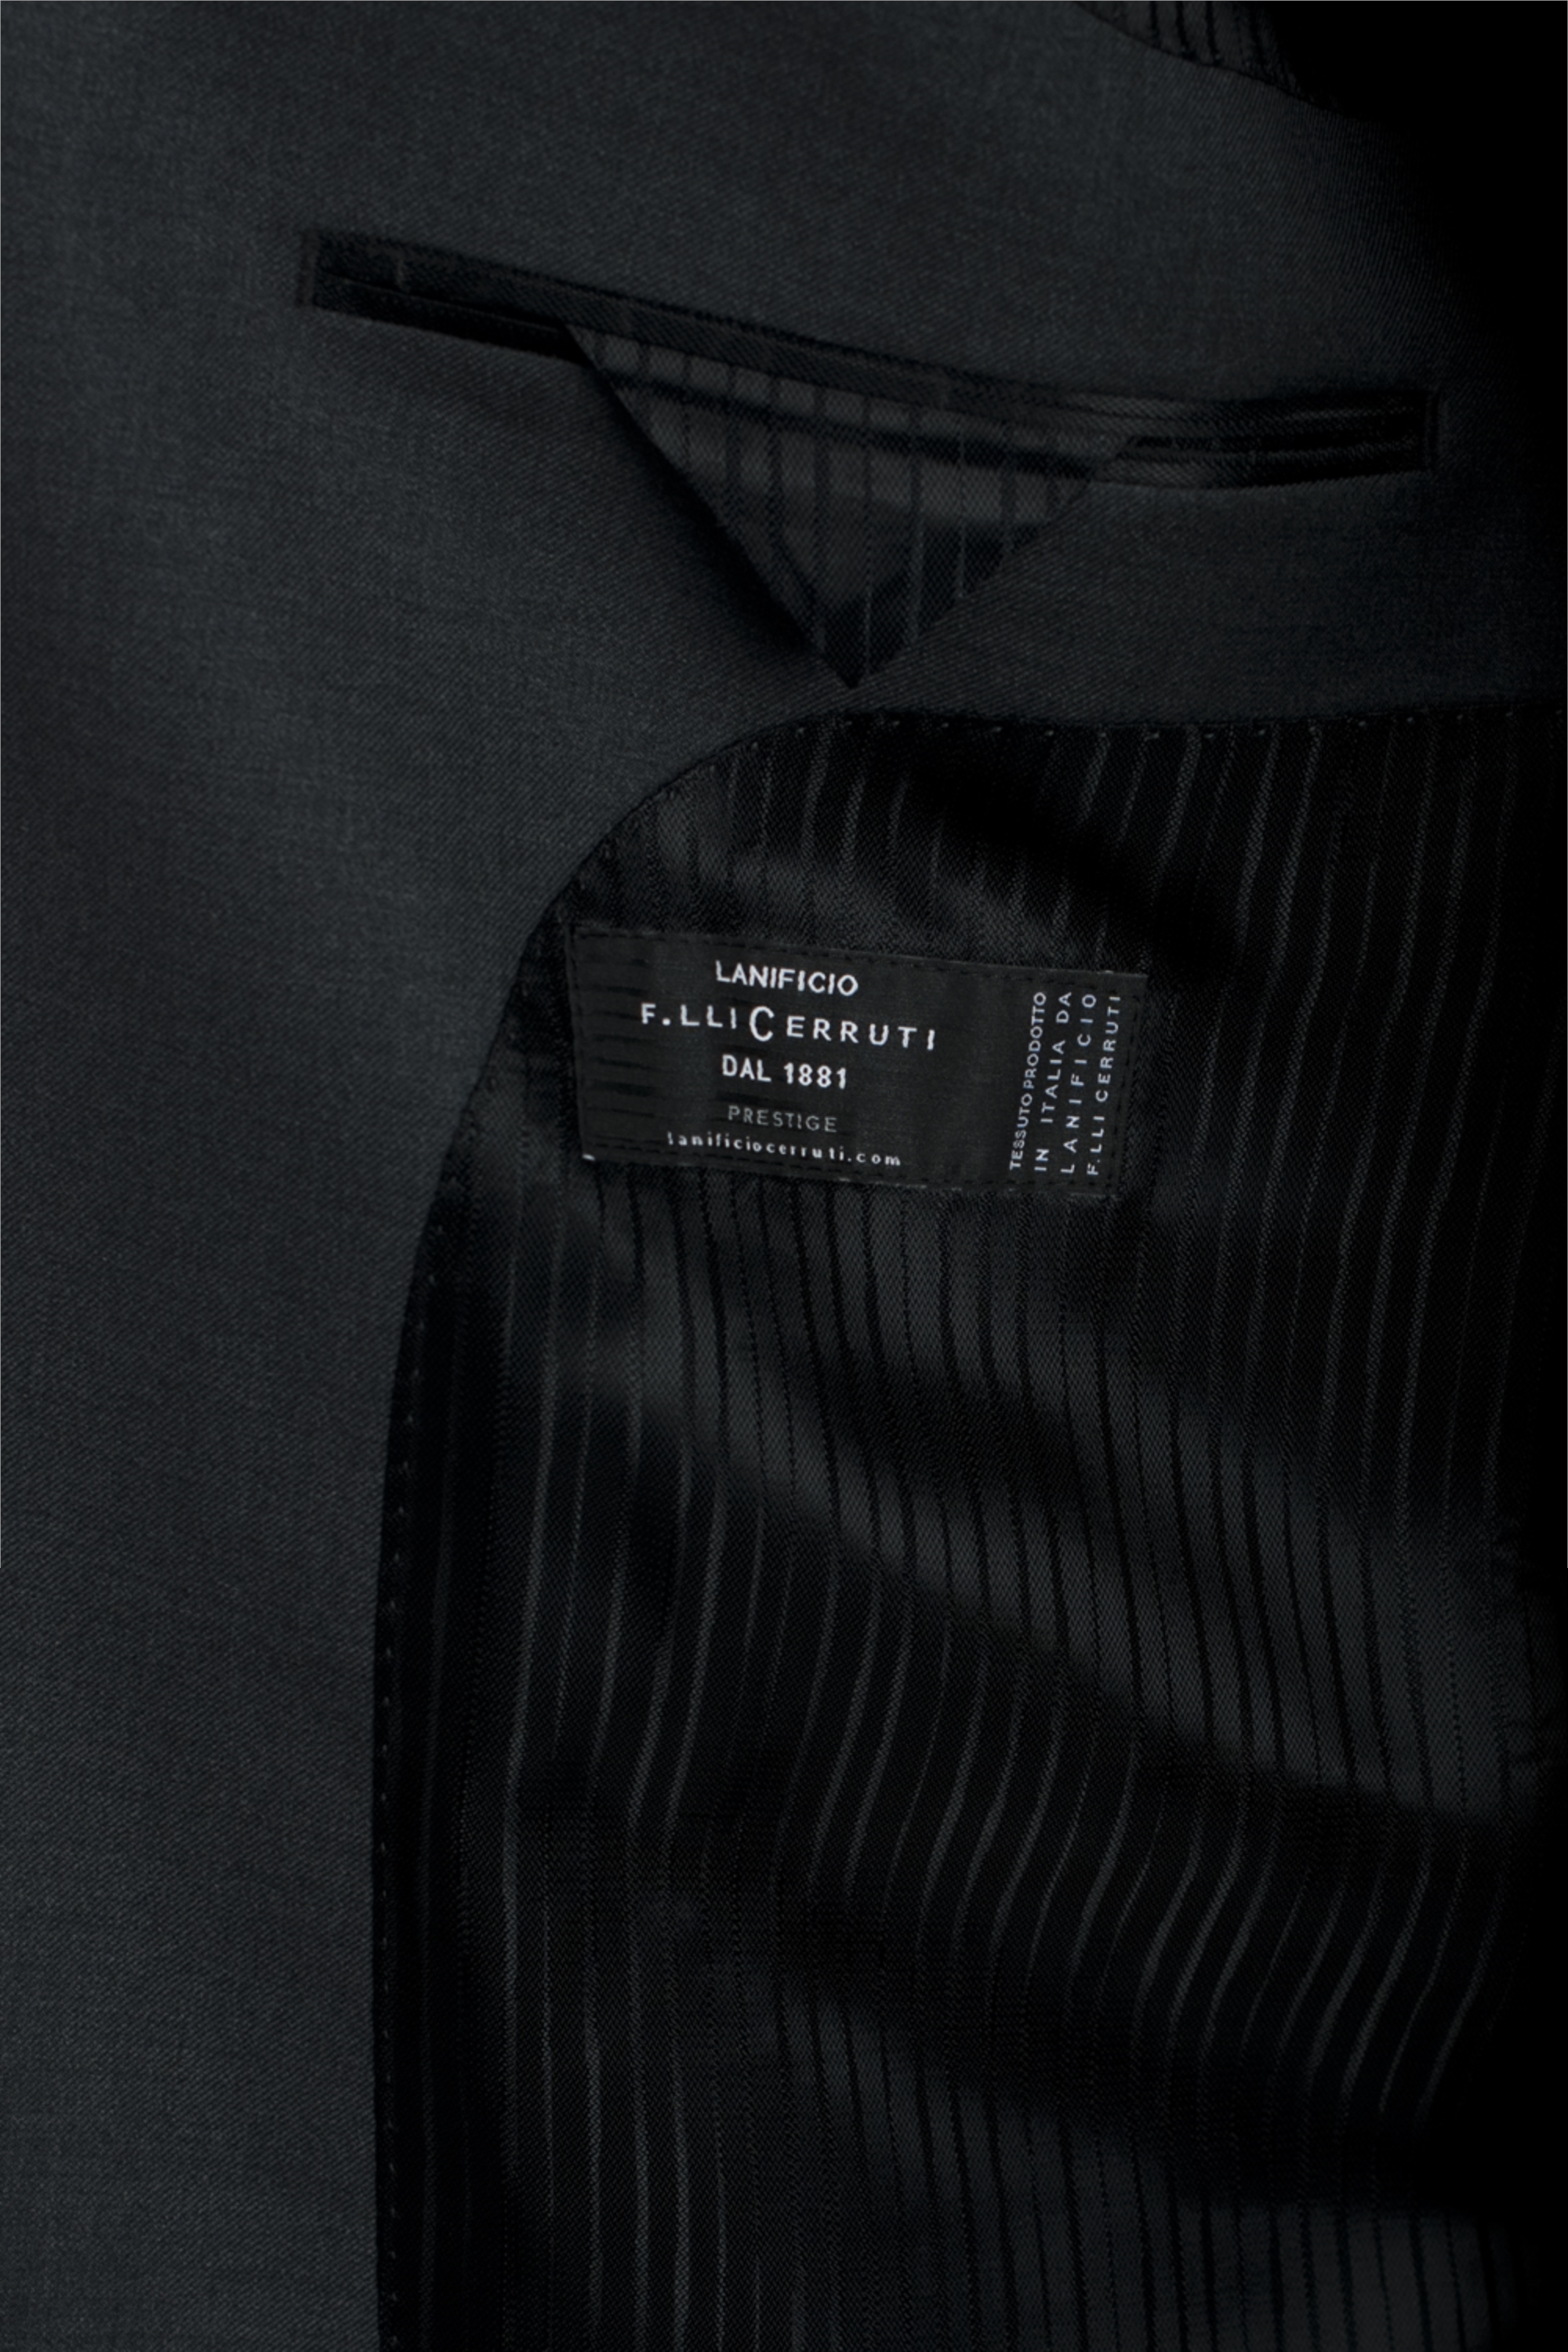 Lanificio Flli Cerruti Dal 1881 Cloth Charcoal Jacket | Buy Online at Moss